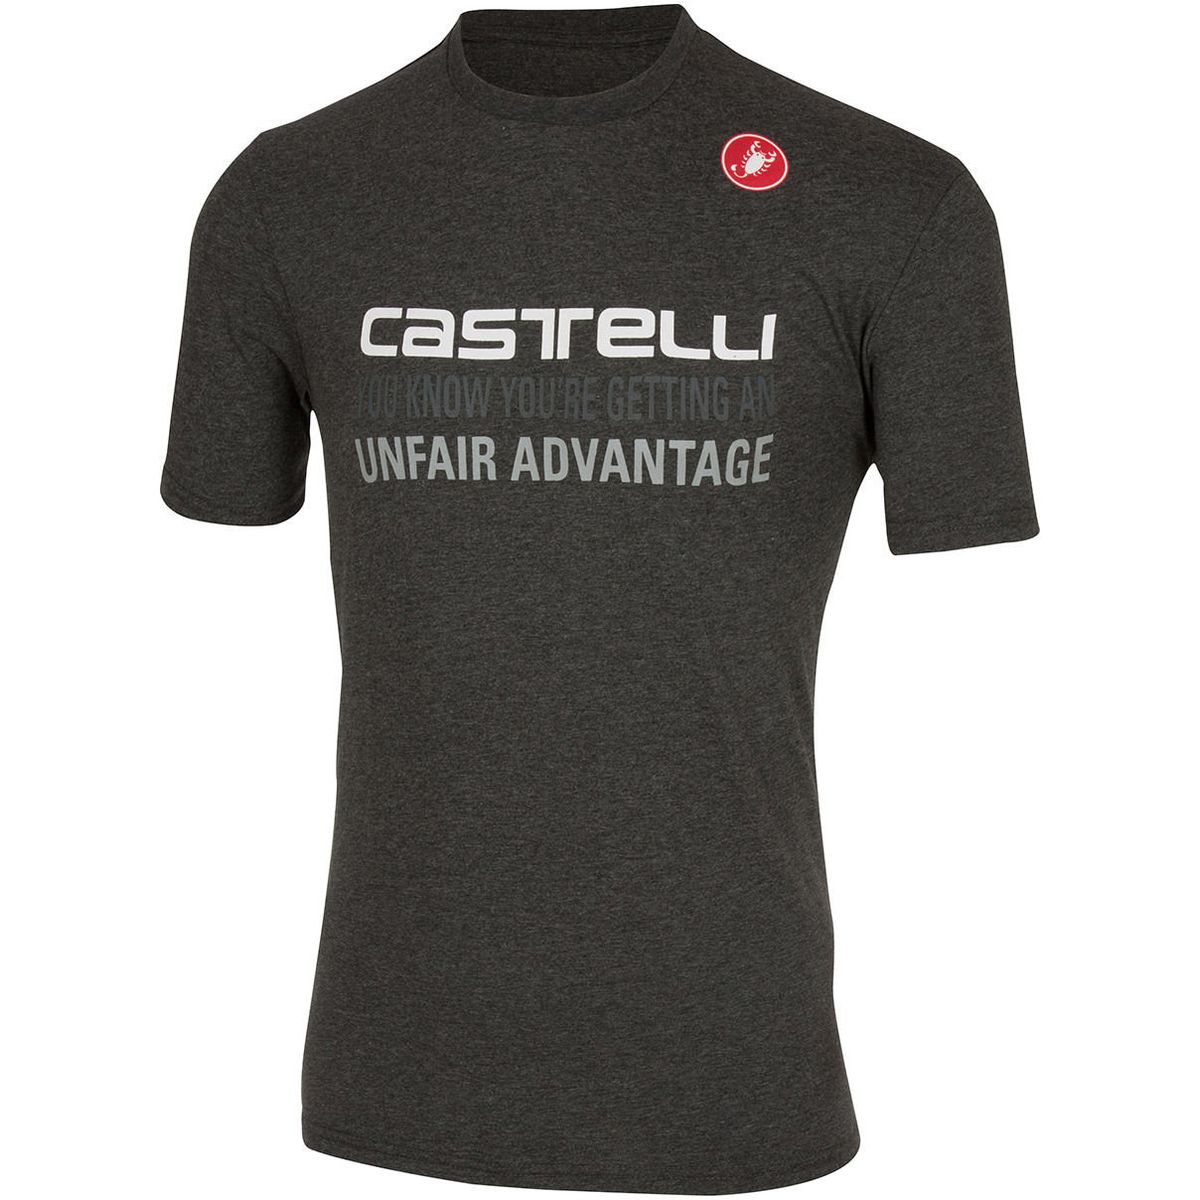 Castelli Advantage T Shirt Short Sleeve Men's